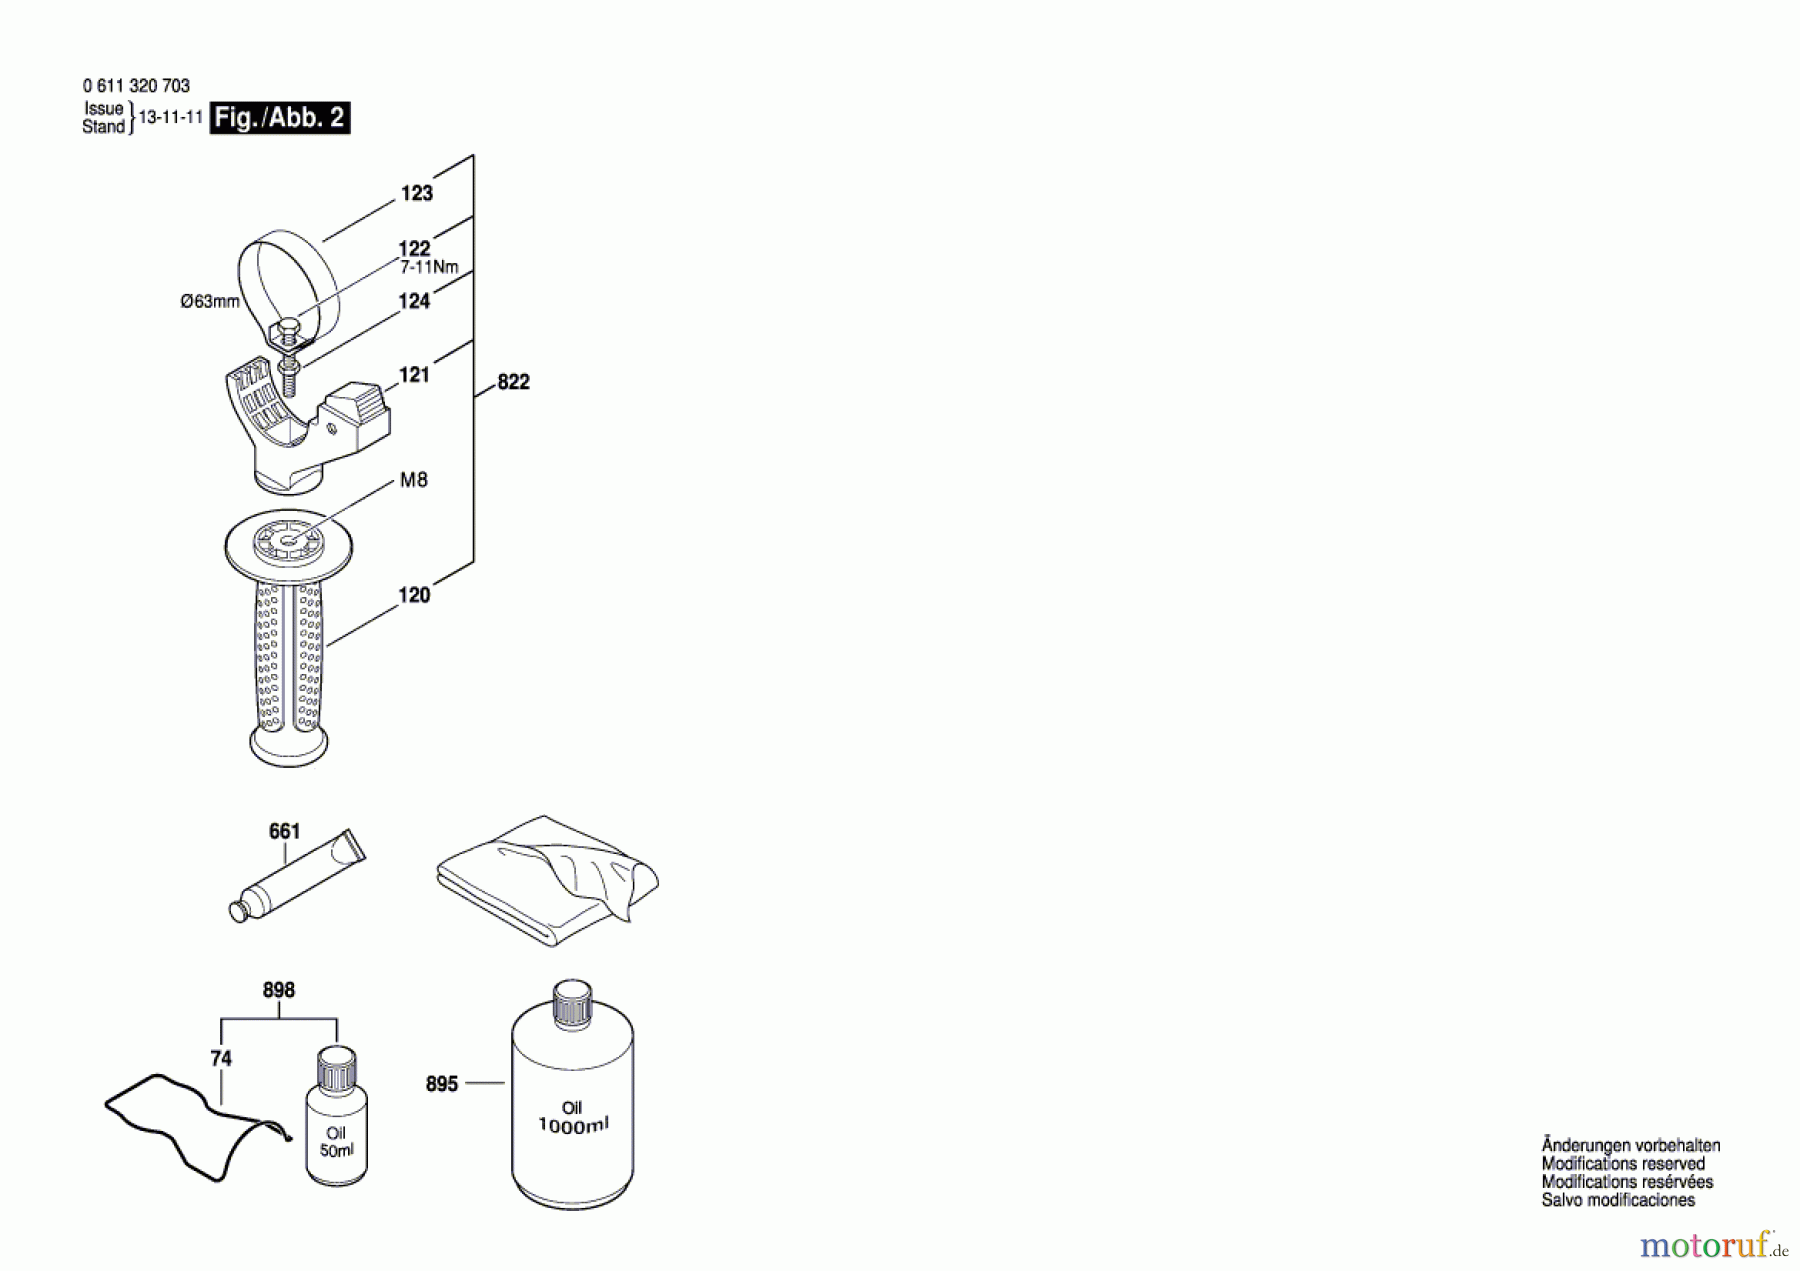  Bosch Werkzeug Schlaghammer MH 3-XE Seite 2